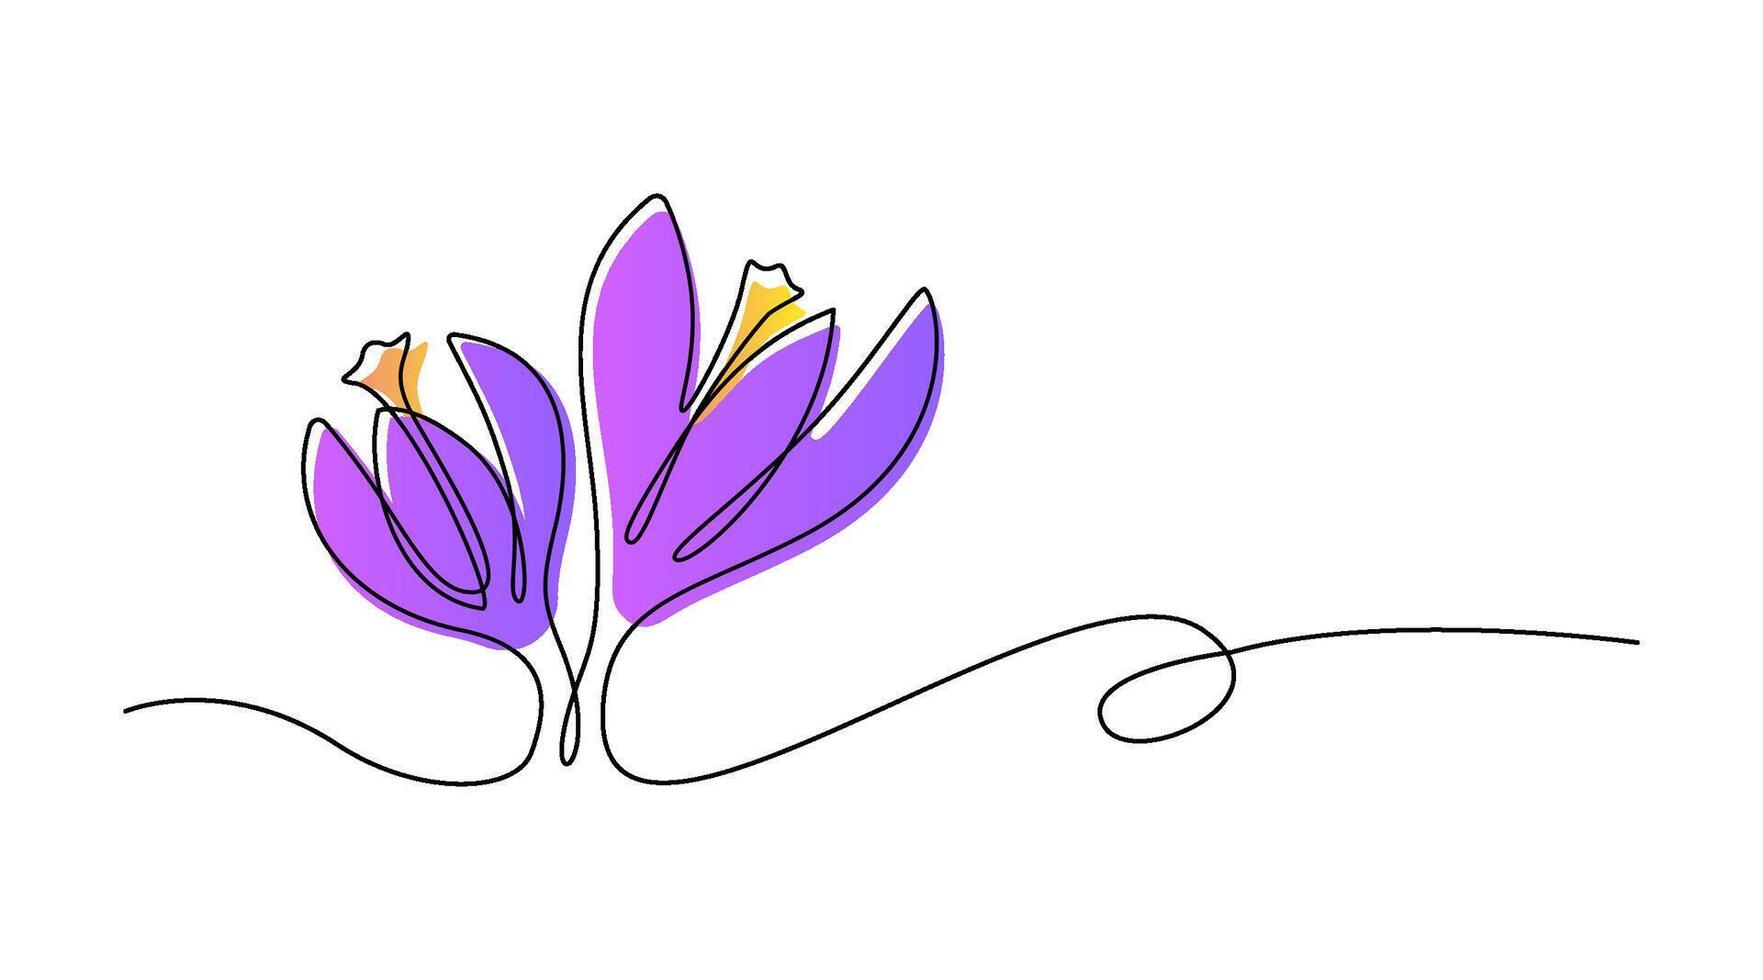 Frühling Blumen Krokus gezeichnet durch einer Linie. Vektor Illustration auf ein Weiß Hintergrund.